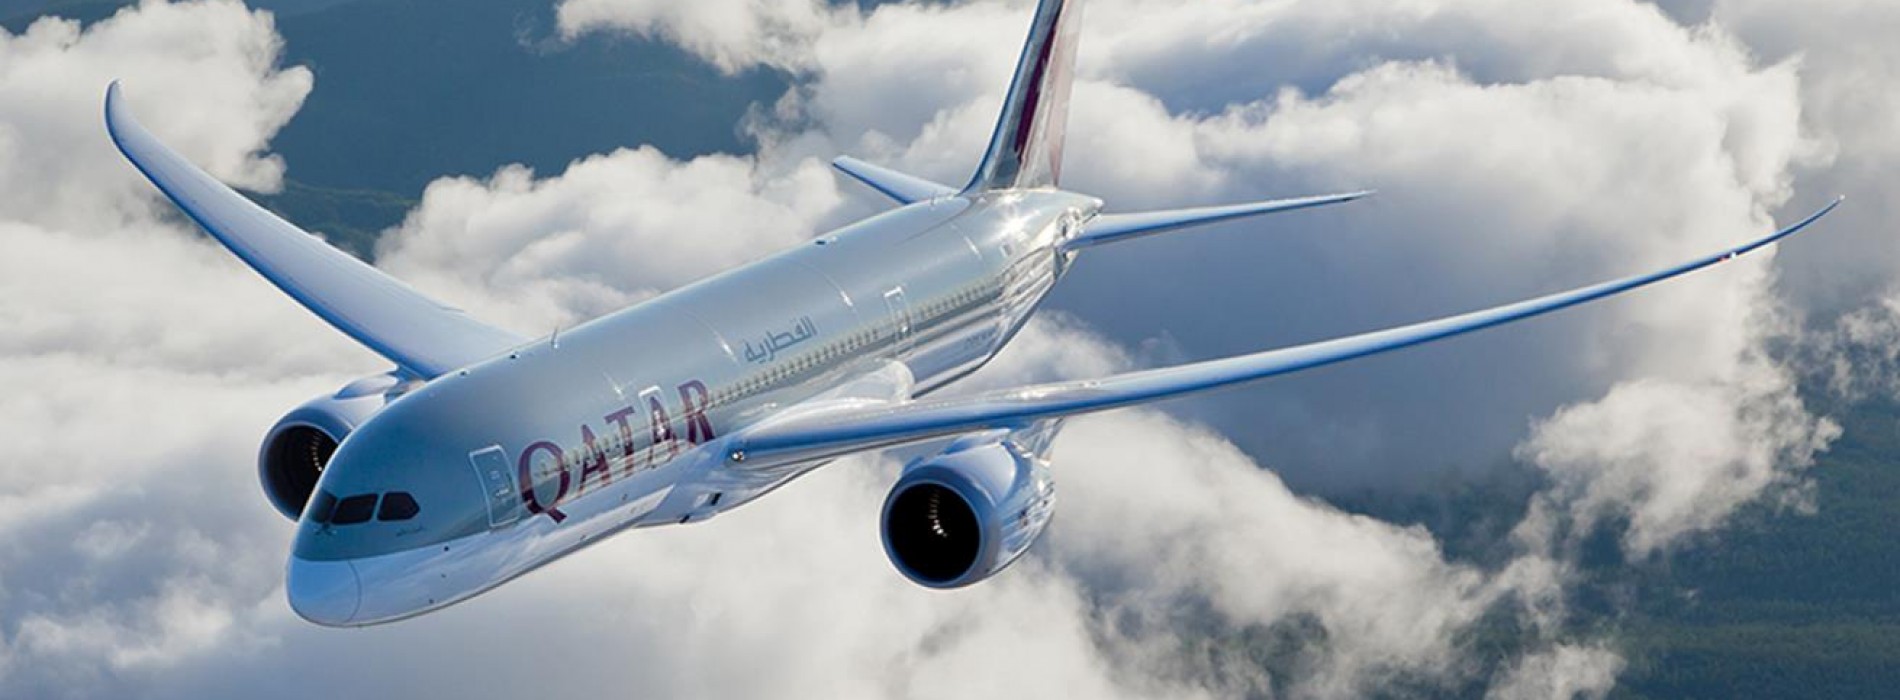 Qatar Airways plans to start airline in India